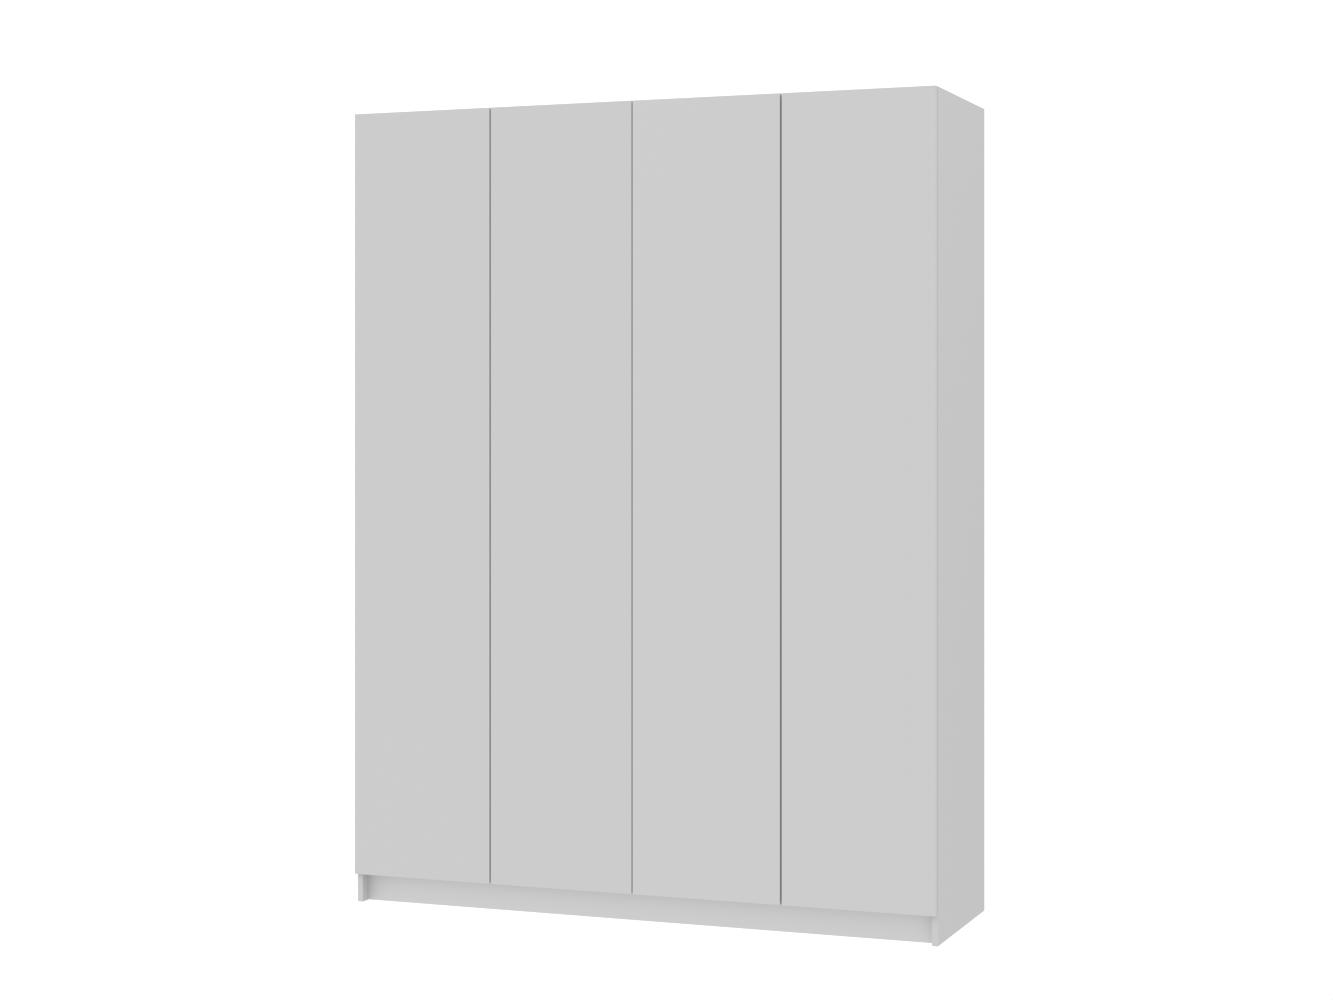 Распашной шкаф Пакс Форсанд 15 white ИКЕА (IKEA) изображение товара